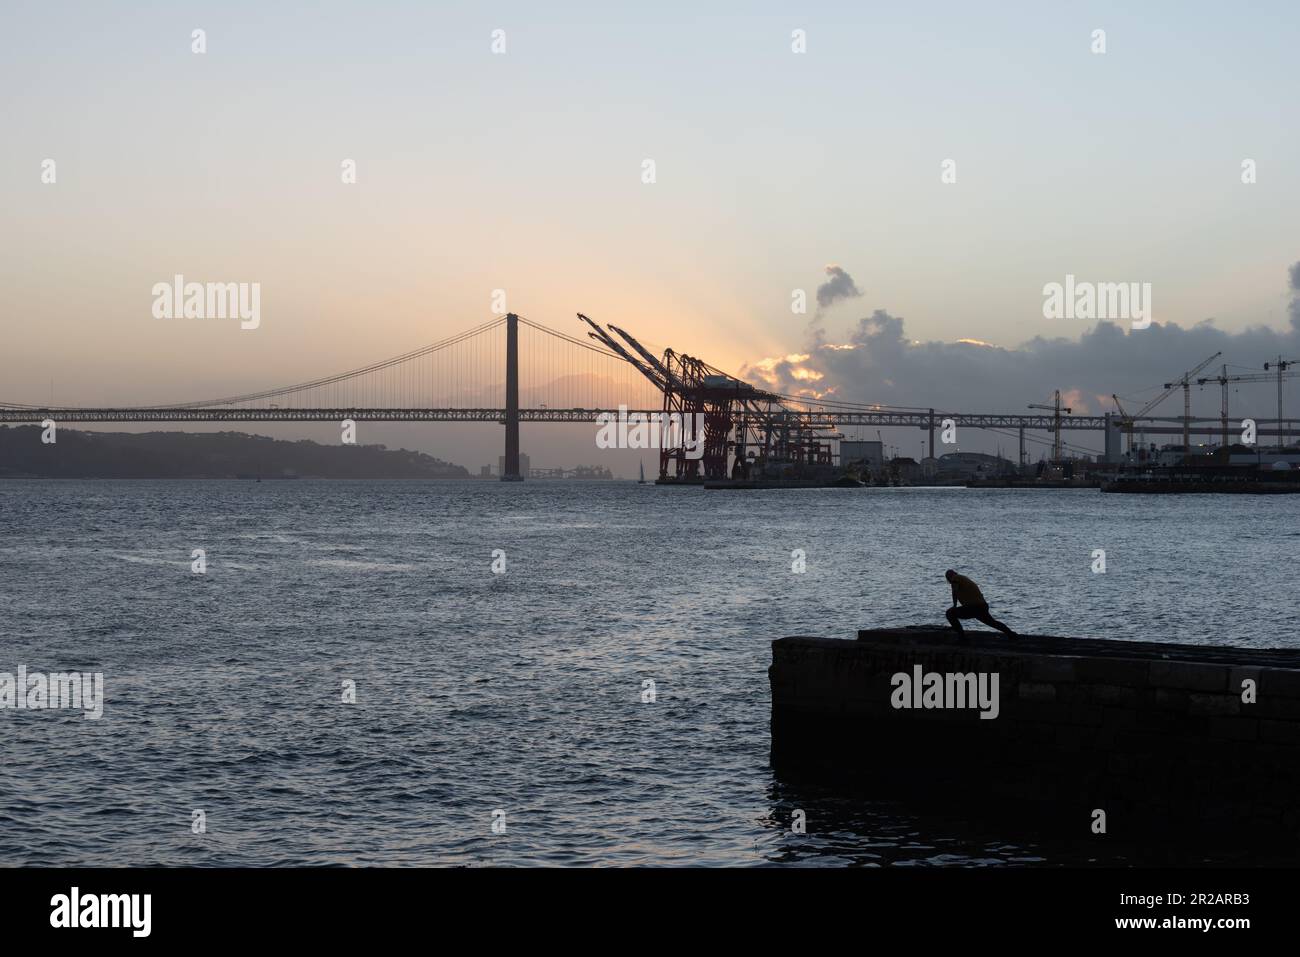 Une personne seule en silhouette debout sur la jetée dans le port de Lisbonne avec le pont du 25 avril et le terminal de fret en arrière-plan contre le coucher du soleil à Lisbonne Portu Banque D'Images